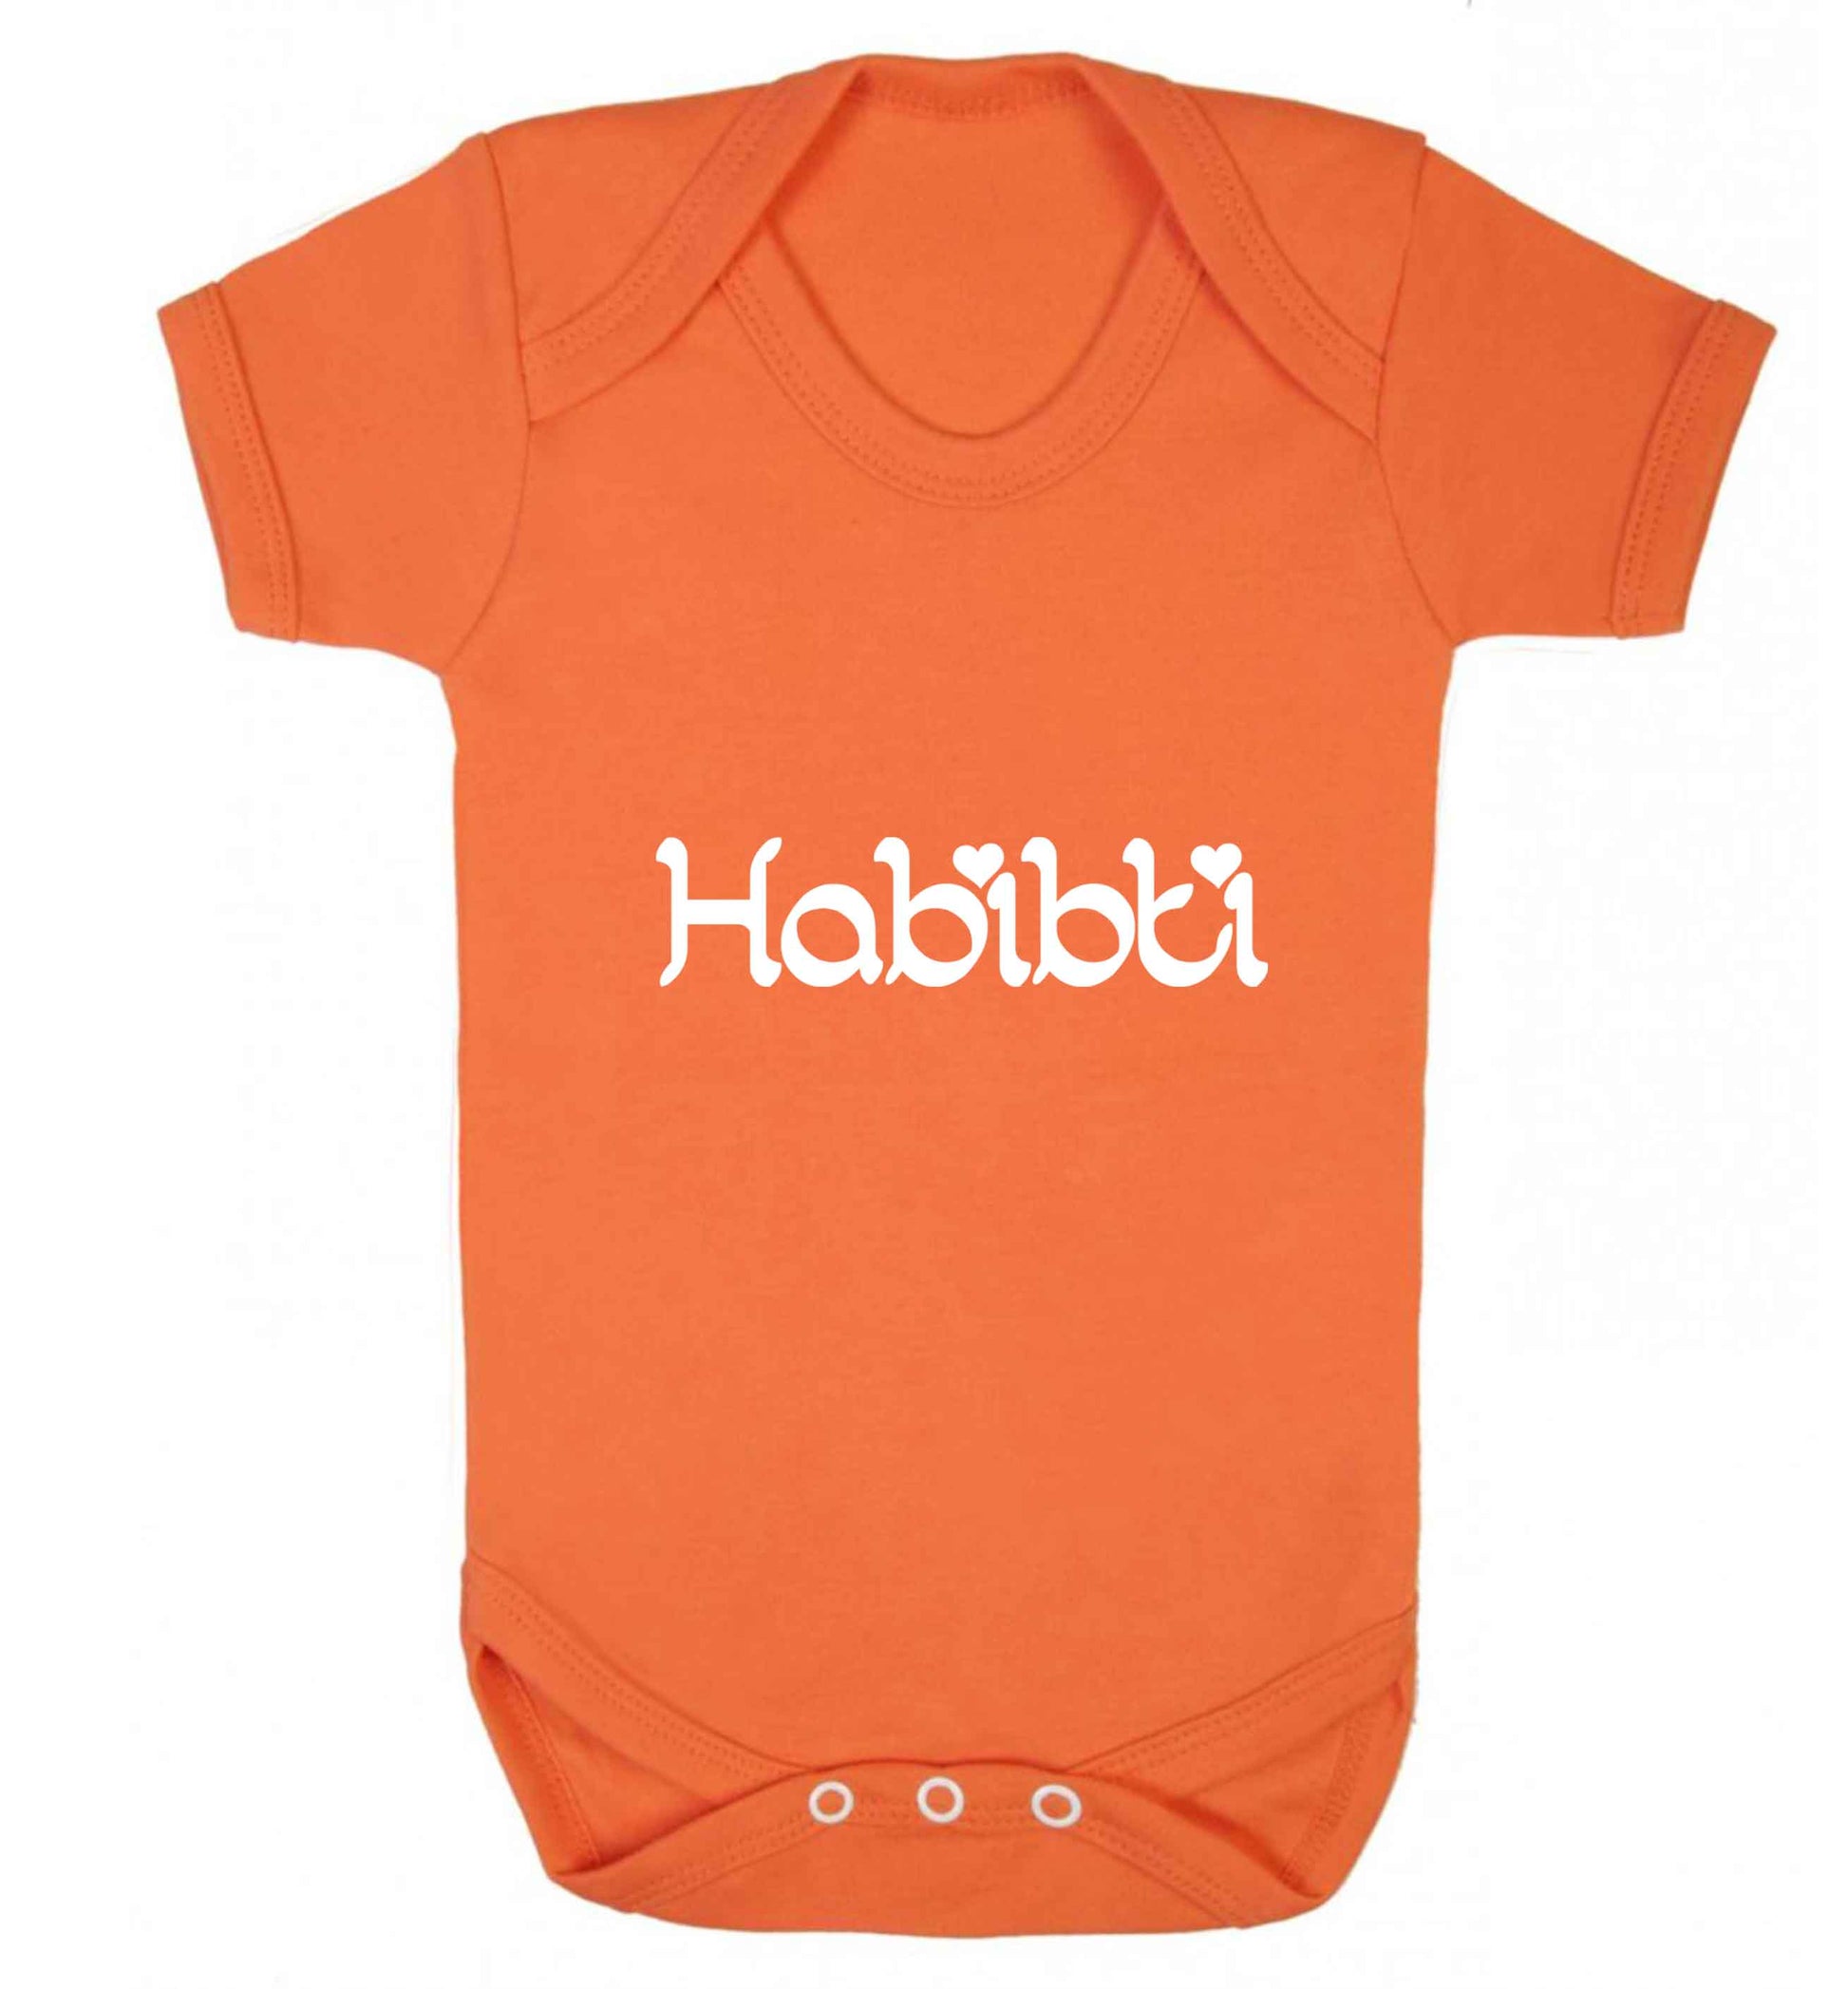 Habibiti baby vest orange 18-24 months